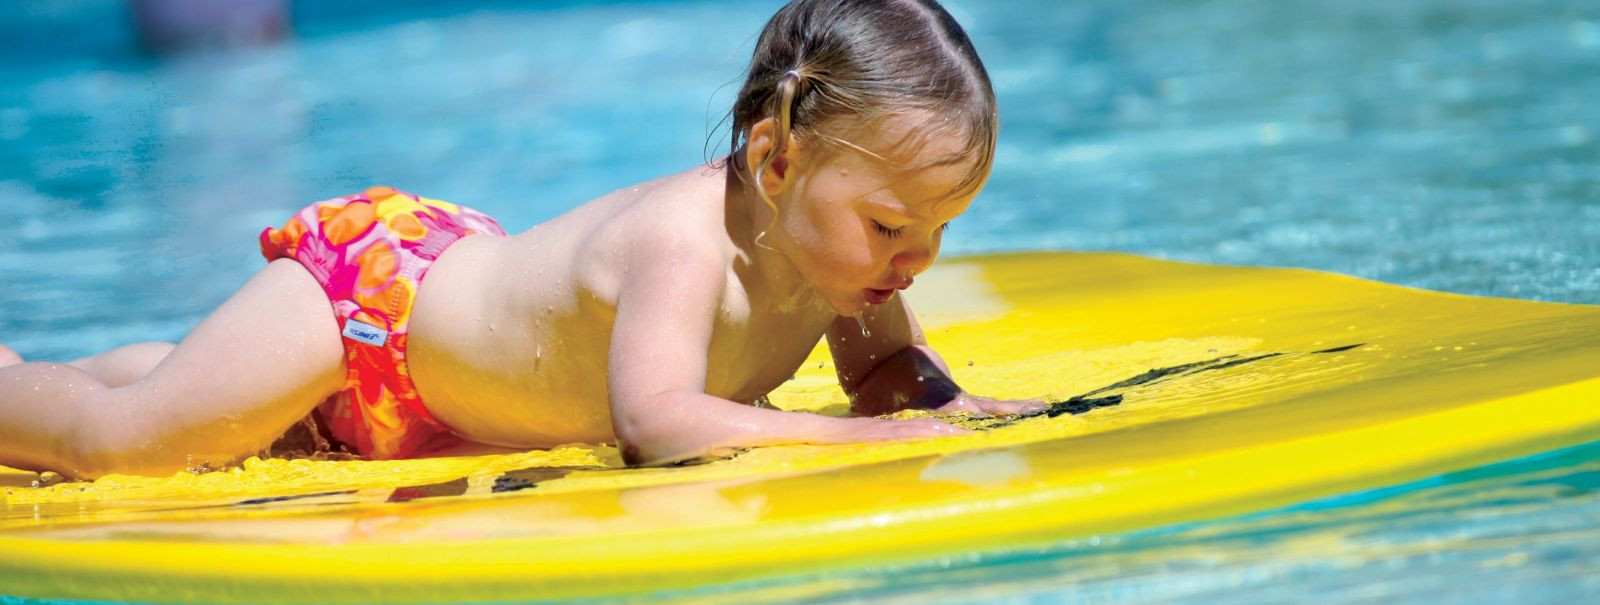 Ujumine pole ainult lõbus tegevus, vaid ka oluline eluoskus, mis pakub mitmeid tervisele kasulikke eeliseid. Oma lapse varustamine õige ujumisvarustusega on häd